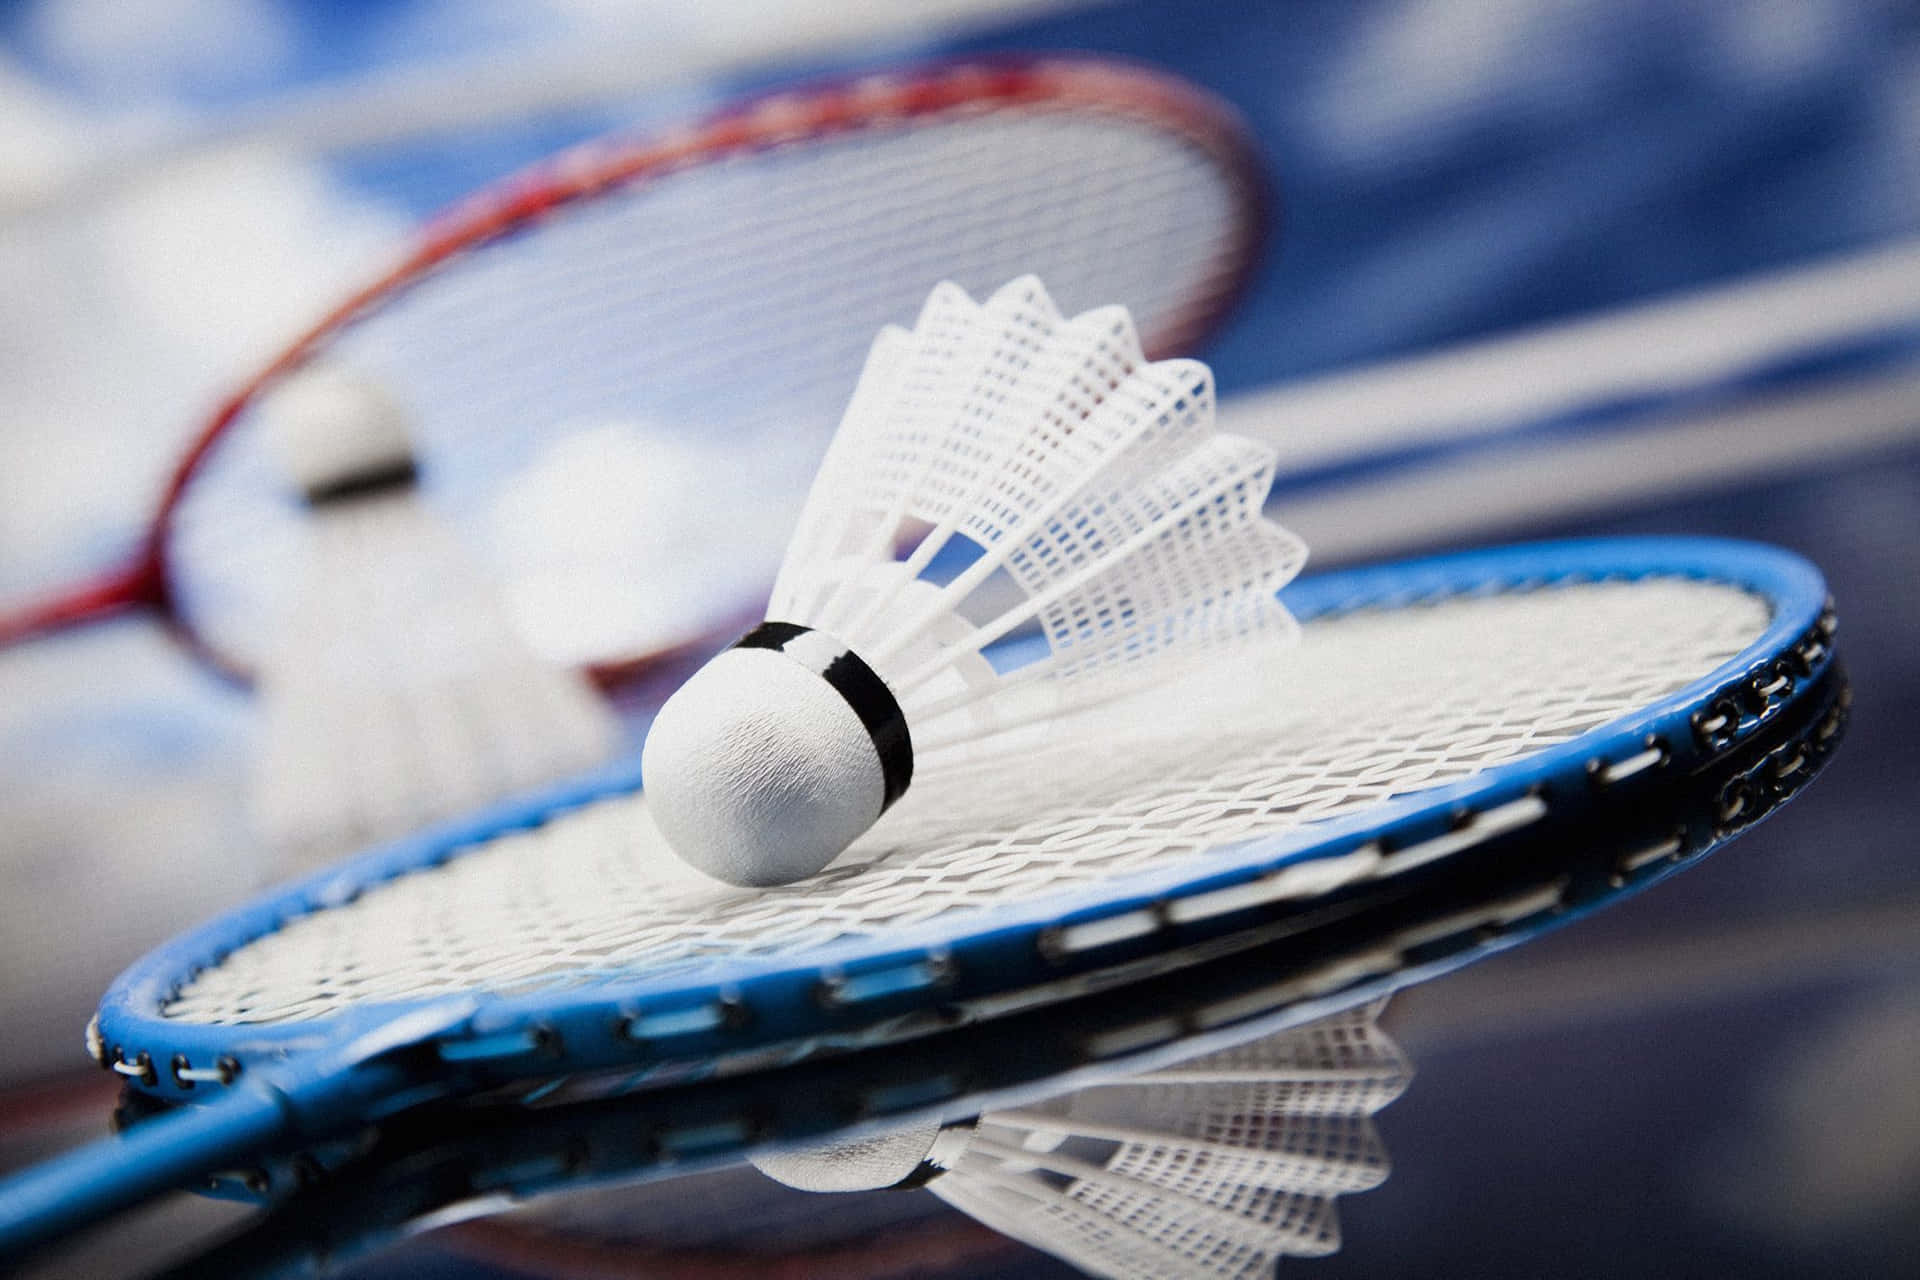 Giocatoridi Badminton Esperti Si Sfidano In Una Partita Accesa.